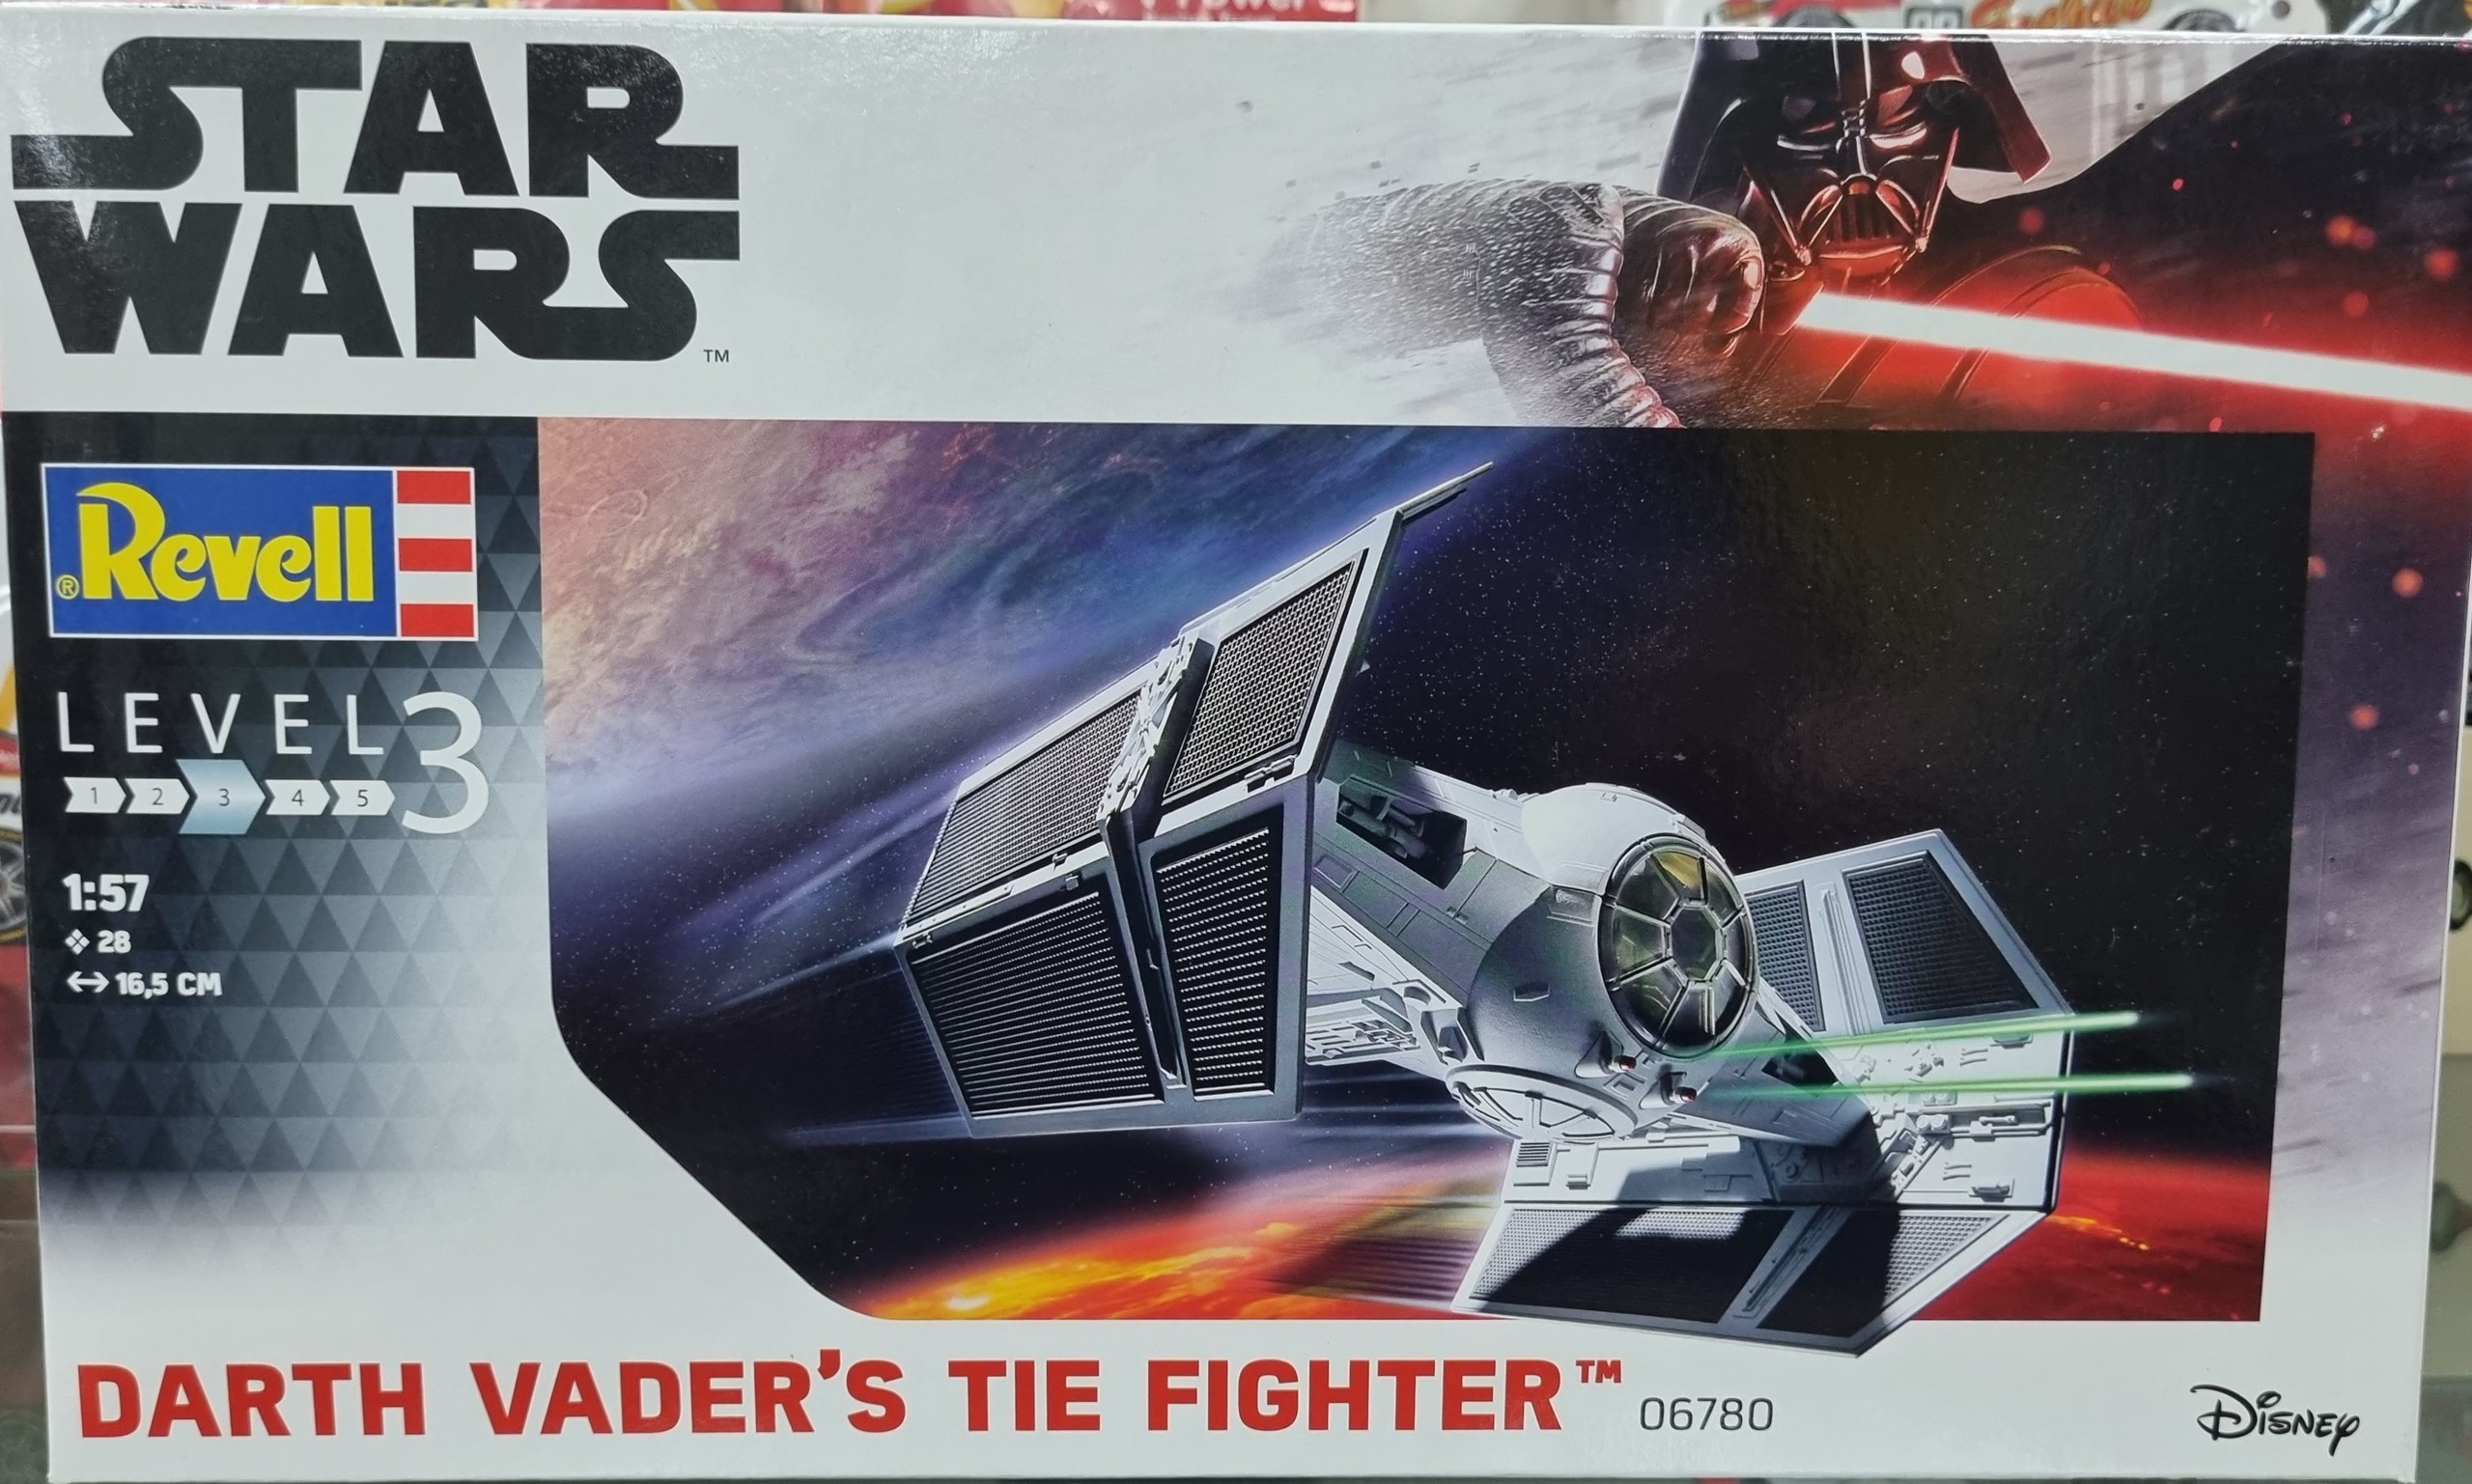 Star Wars Darth Vader Tie Fighter Kitset 1/57 Revell Level 3